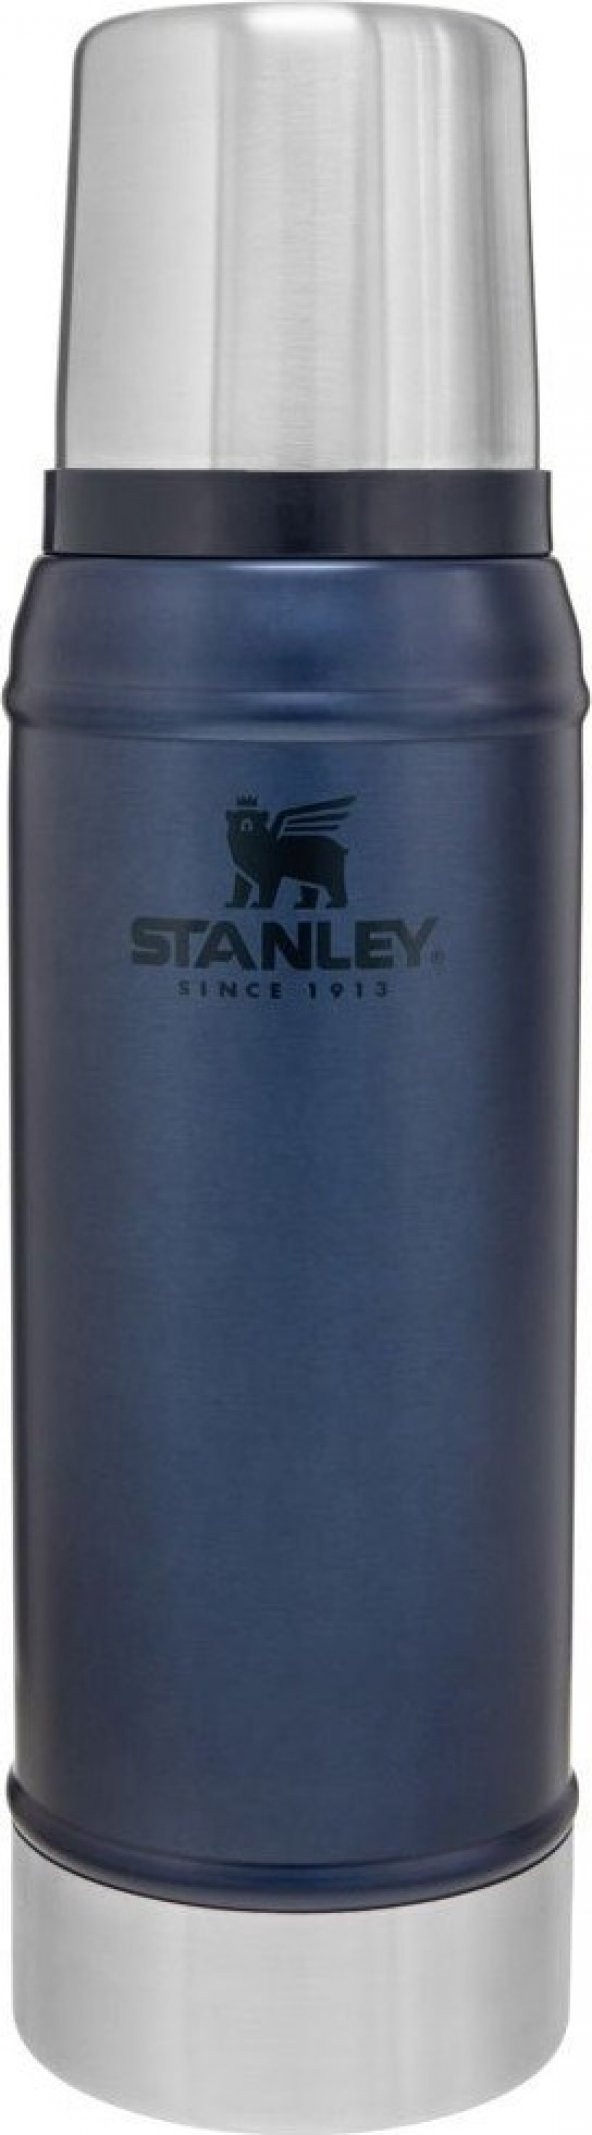 Stanley Klasik Vakumlu Paslanmaz Çelik Termos 0.75 LT